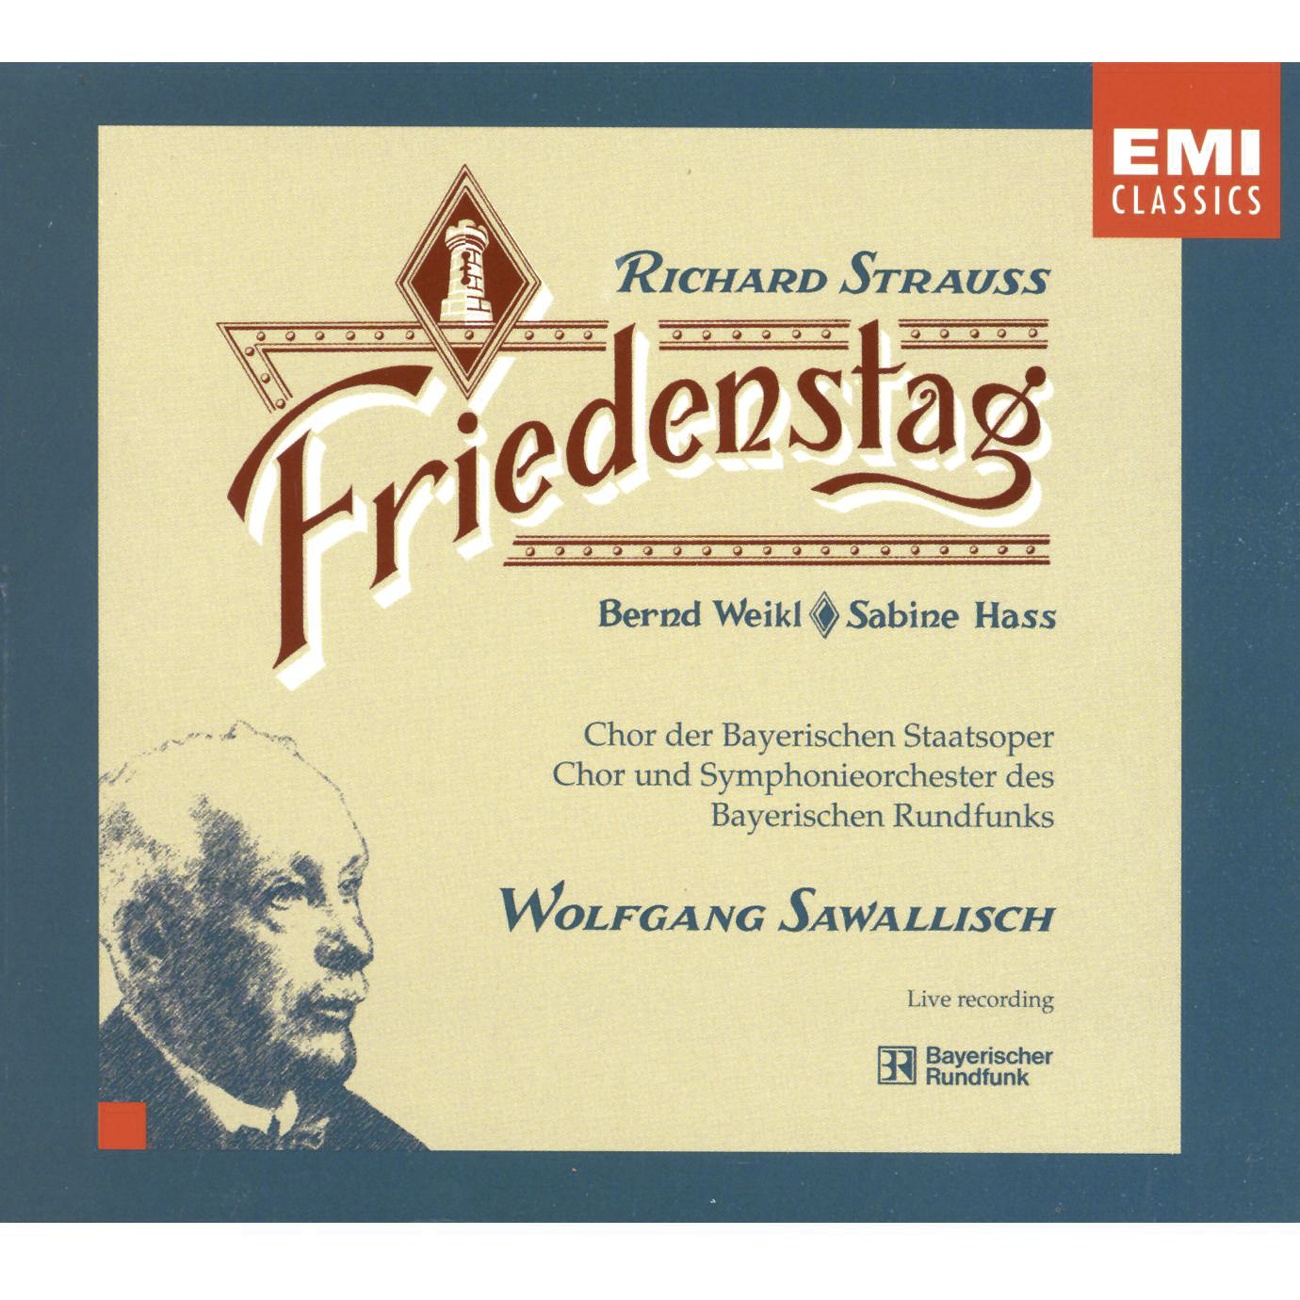 Richard Strauss: Friedenstag Op.81